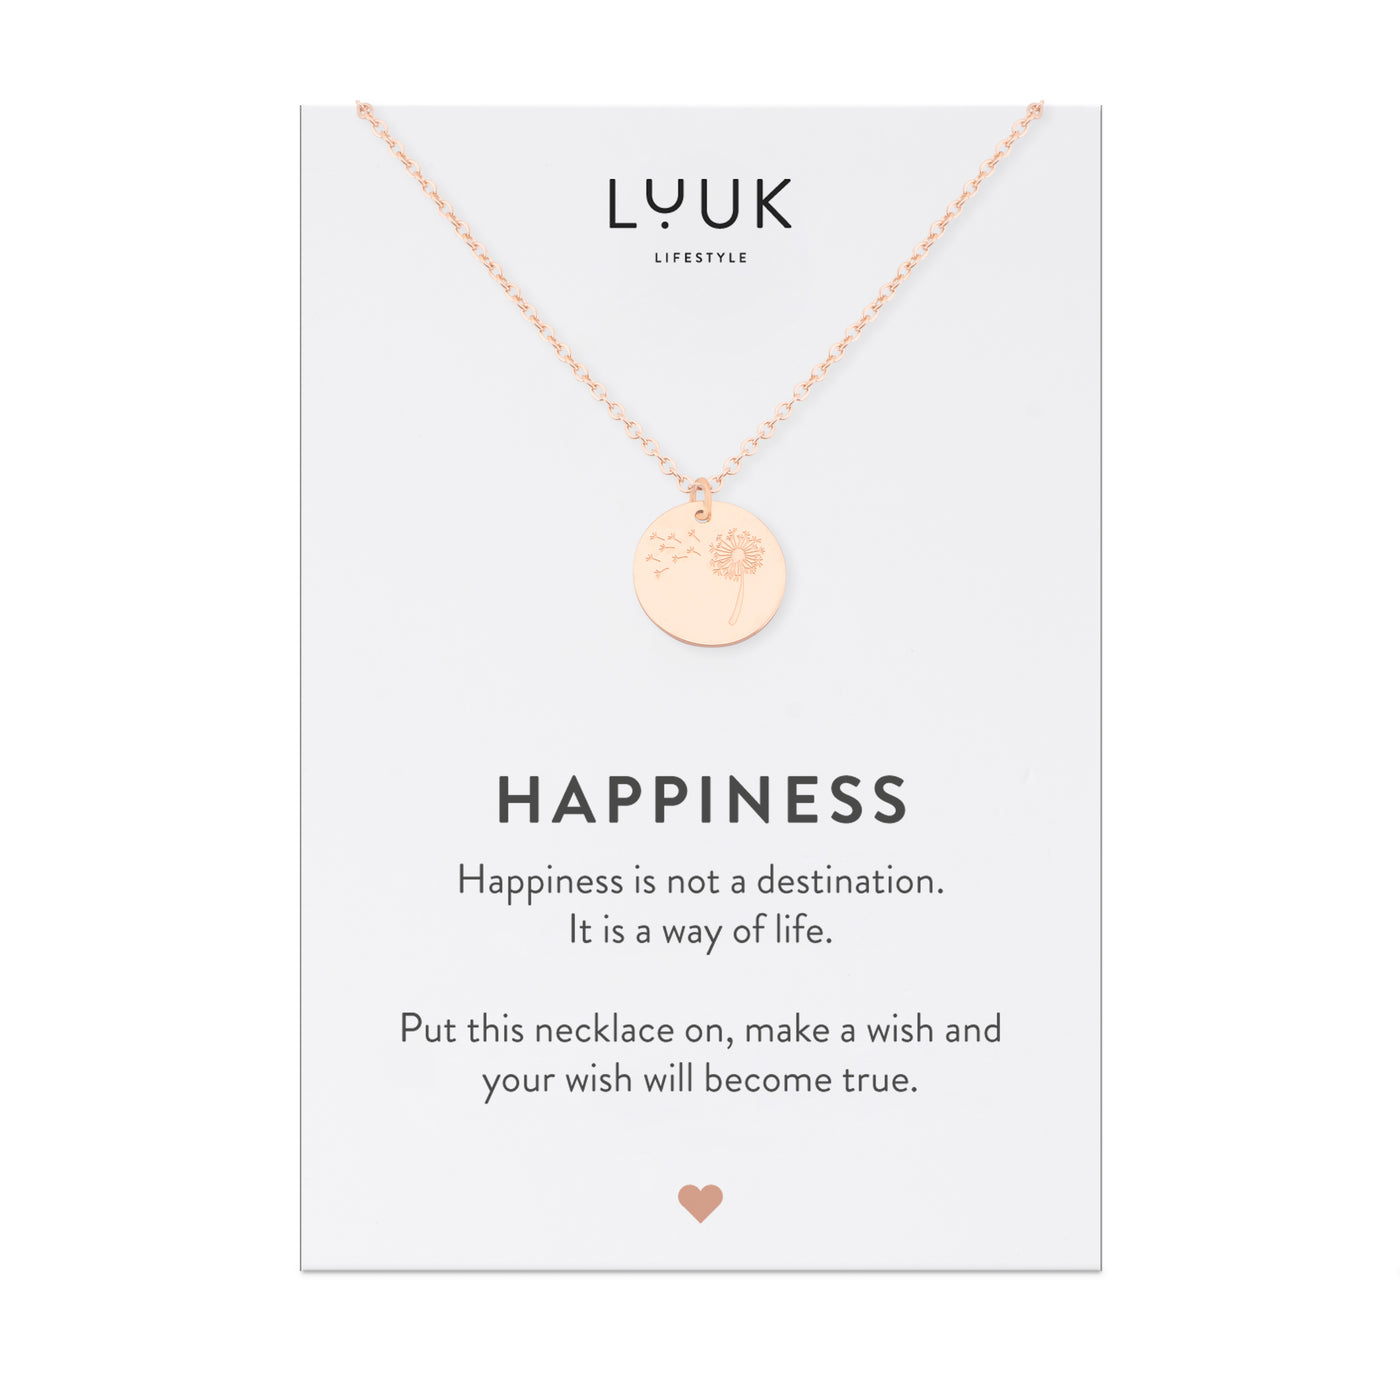 Halskette mit Pusteblumen Anhänger in Rosegold auf Happiness Spruchkarte von Luuk Lifestyle